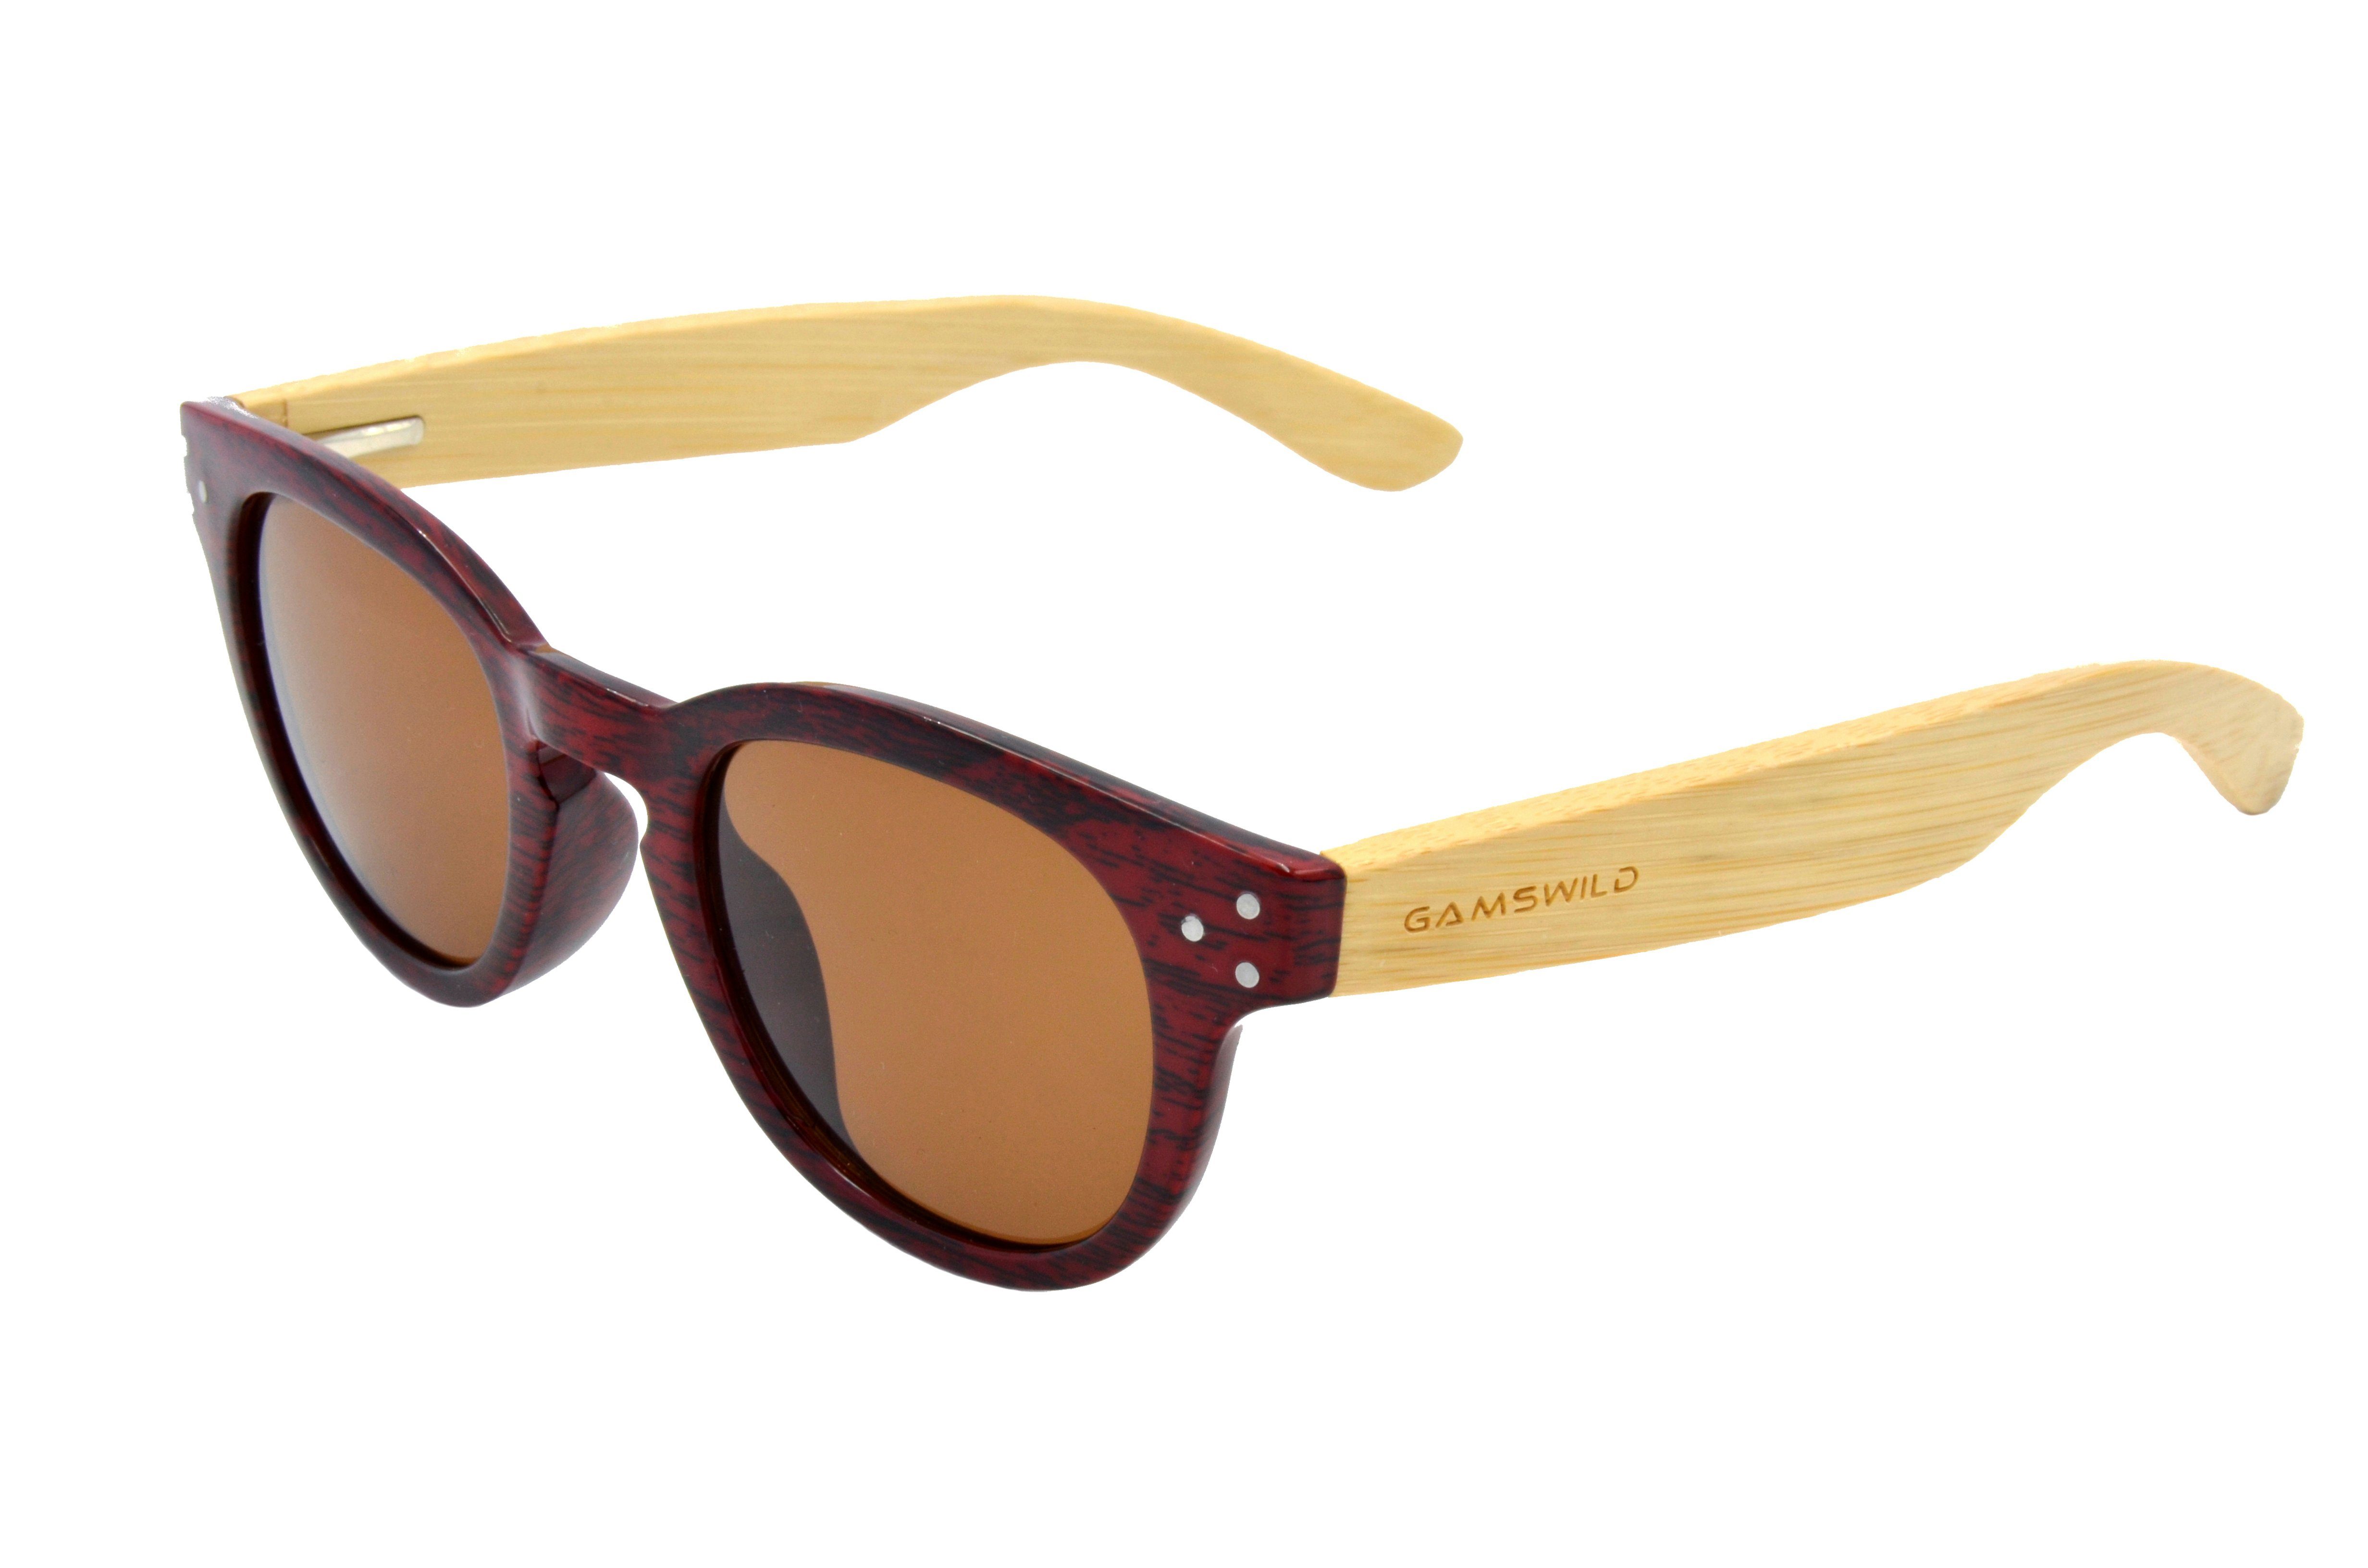 Gamswild Sonnenbrille »WM1428 GAMSSTYLE Modebrille Damen, rot-braun, blau,  dunkelbraun« Bambusholzbügel/ Fassung Holzoptik online kaufen | OTTO